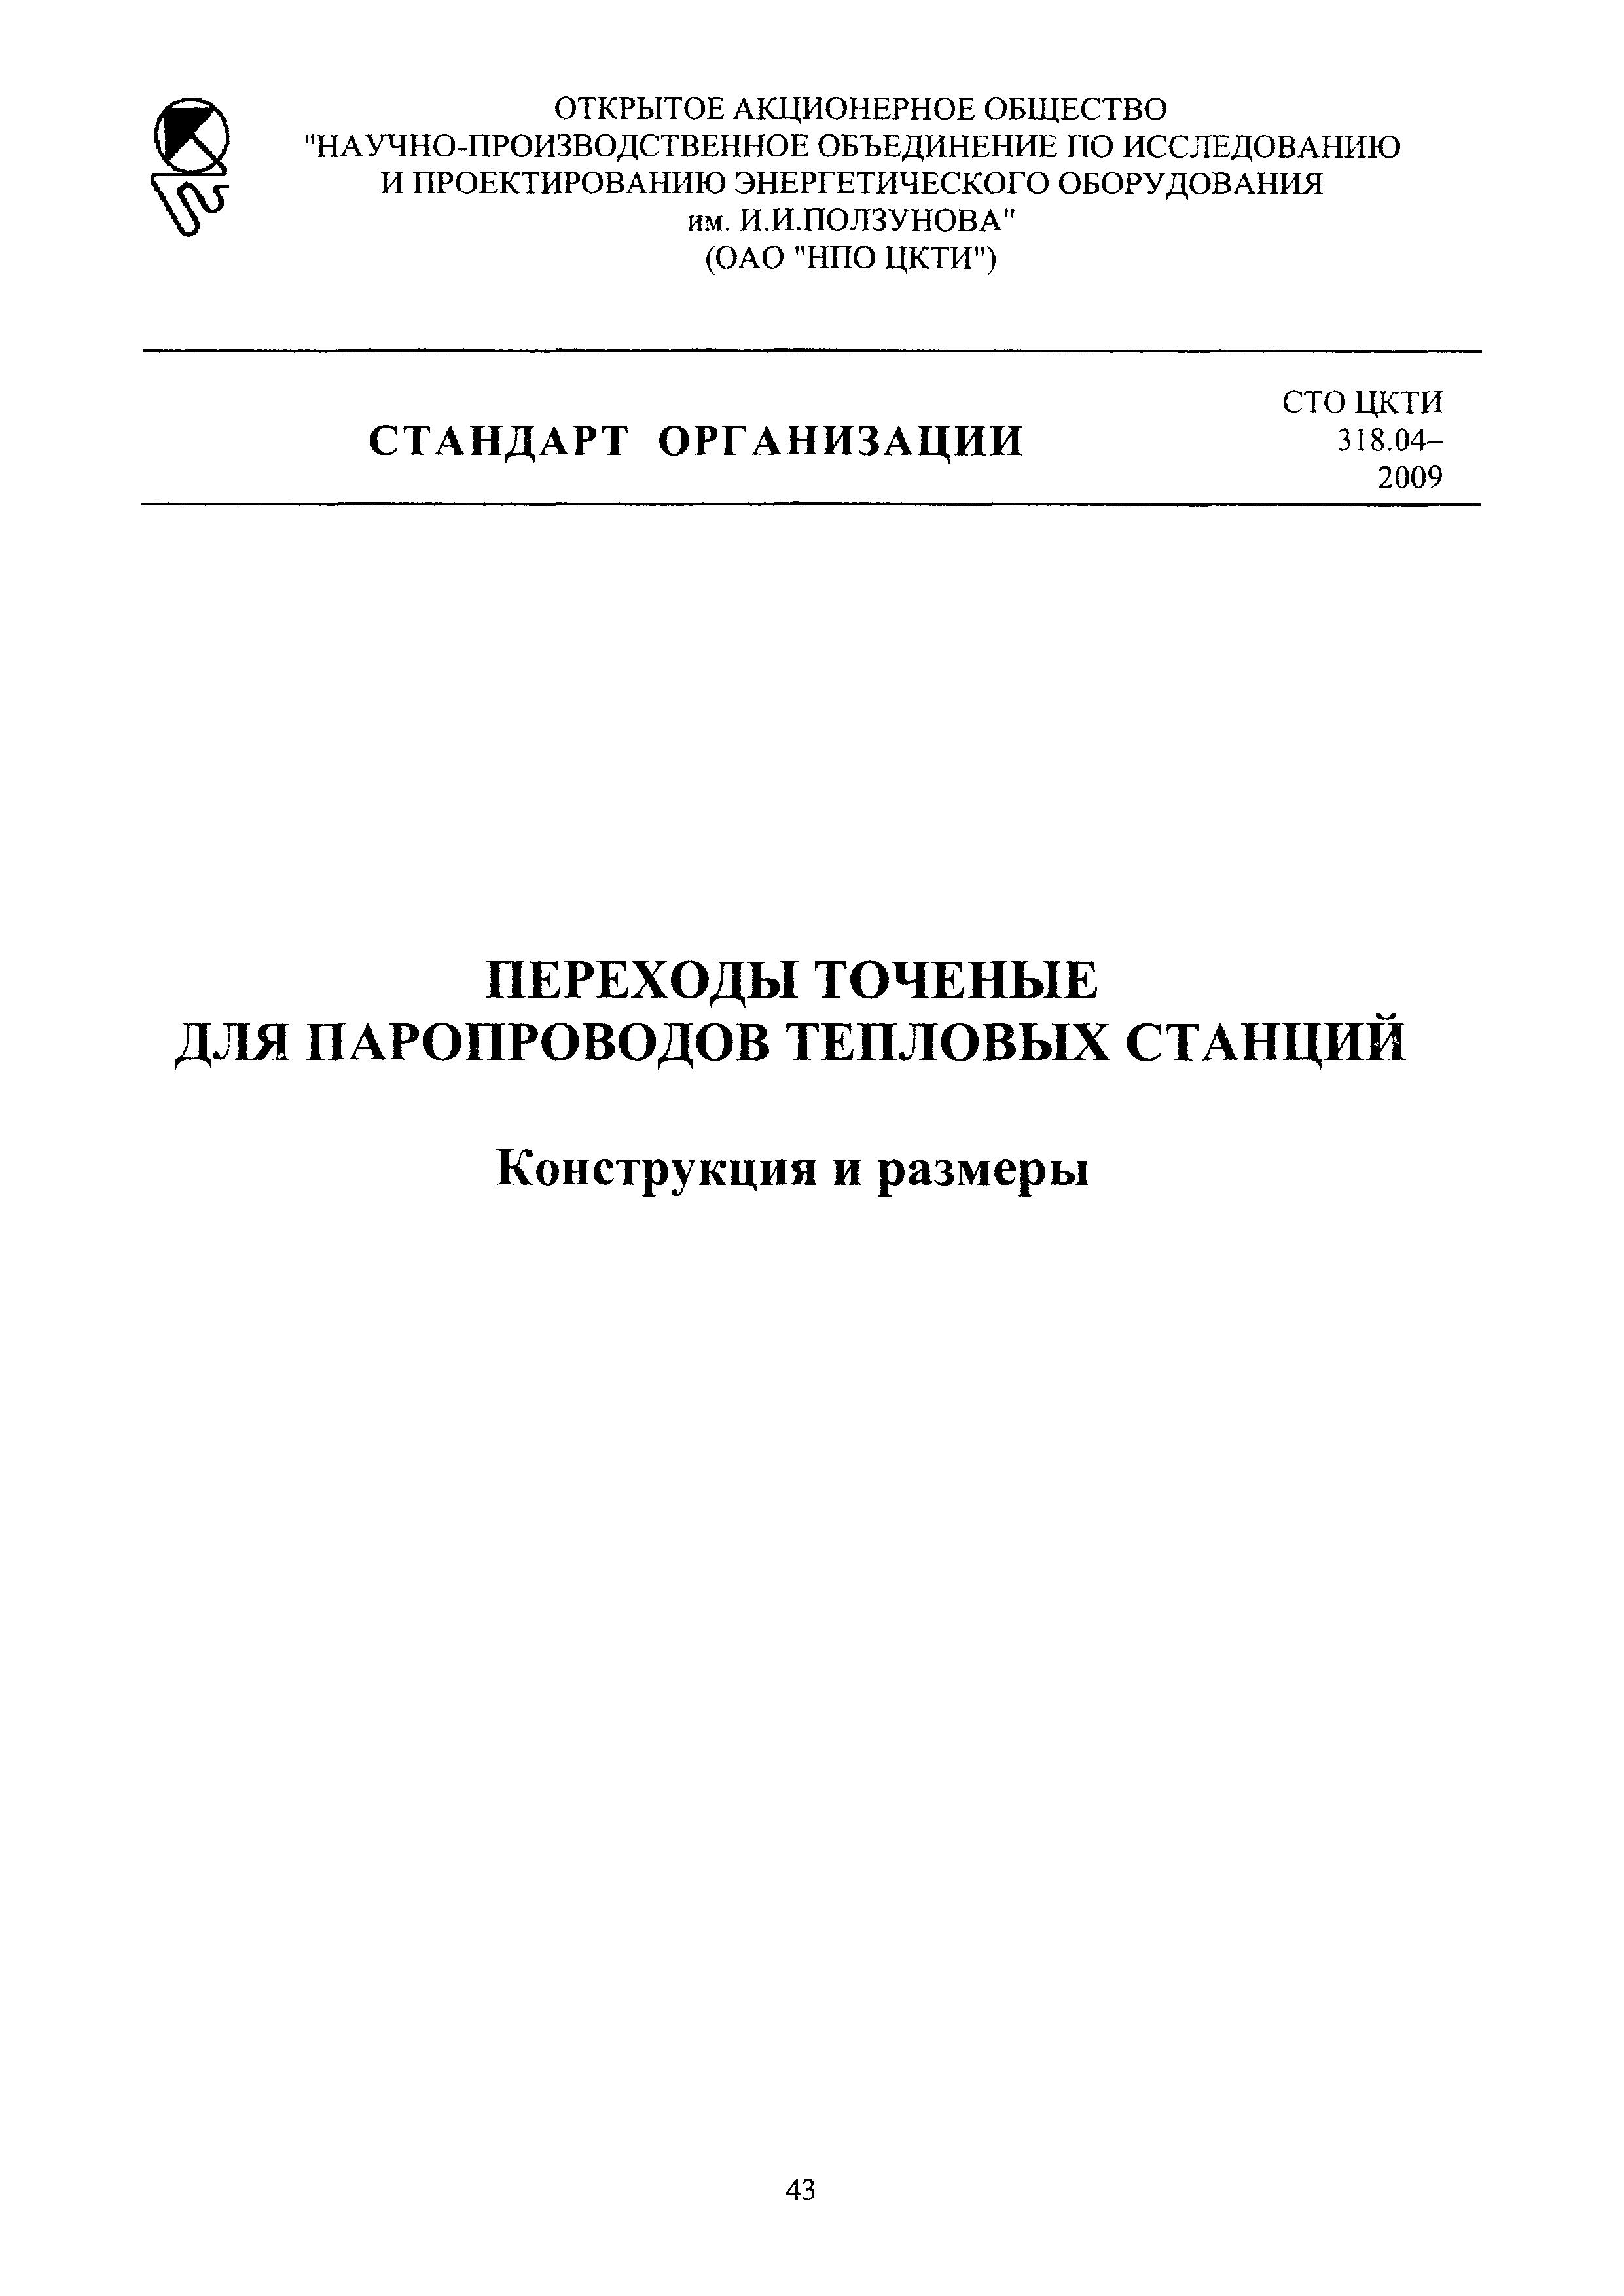 СТО ЦКТИ 318.04-2009